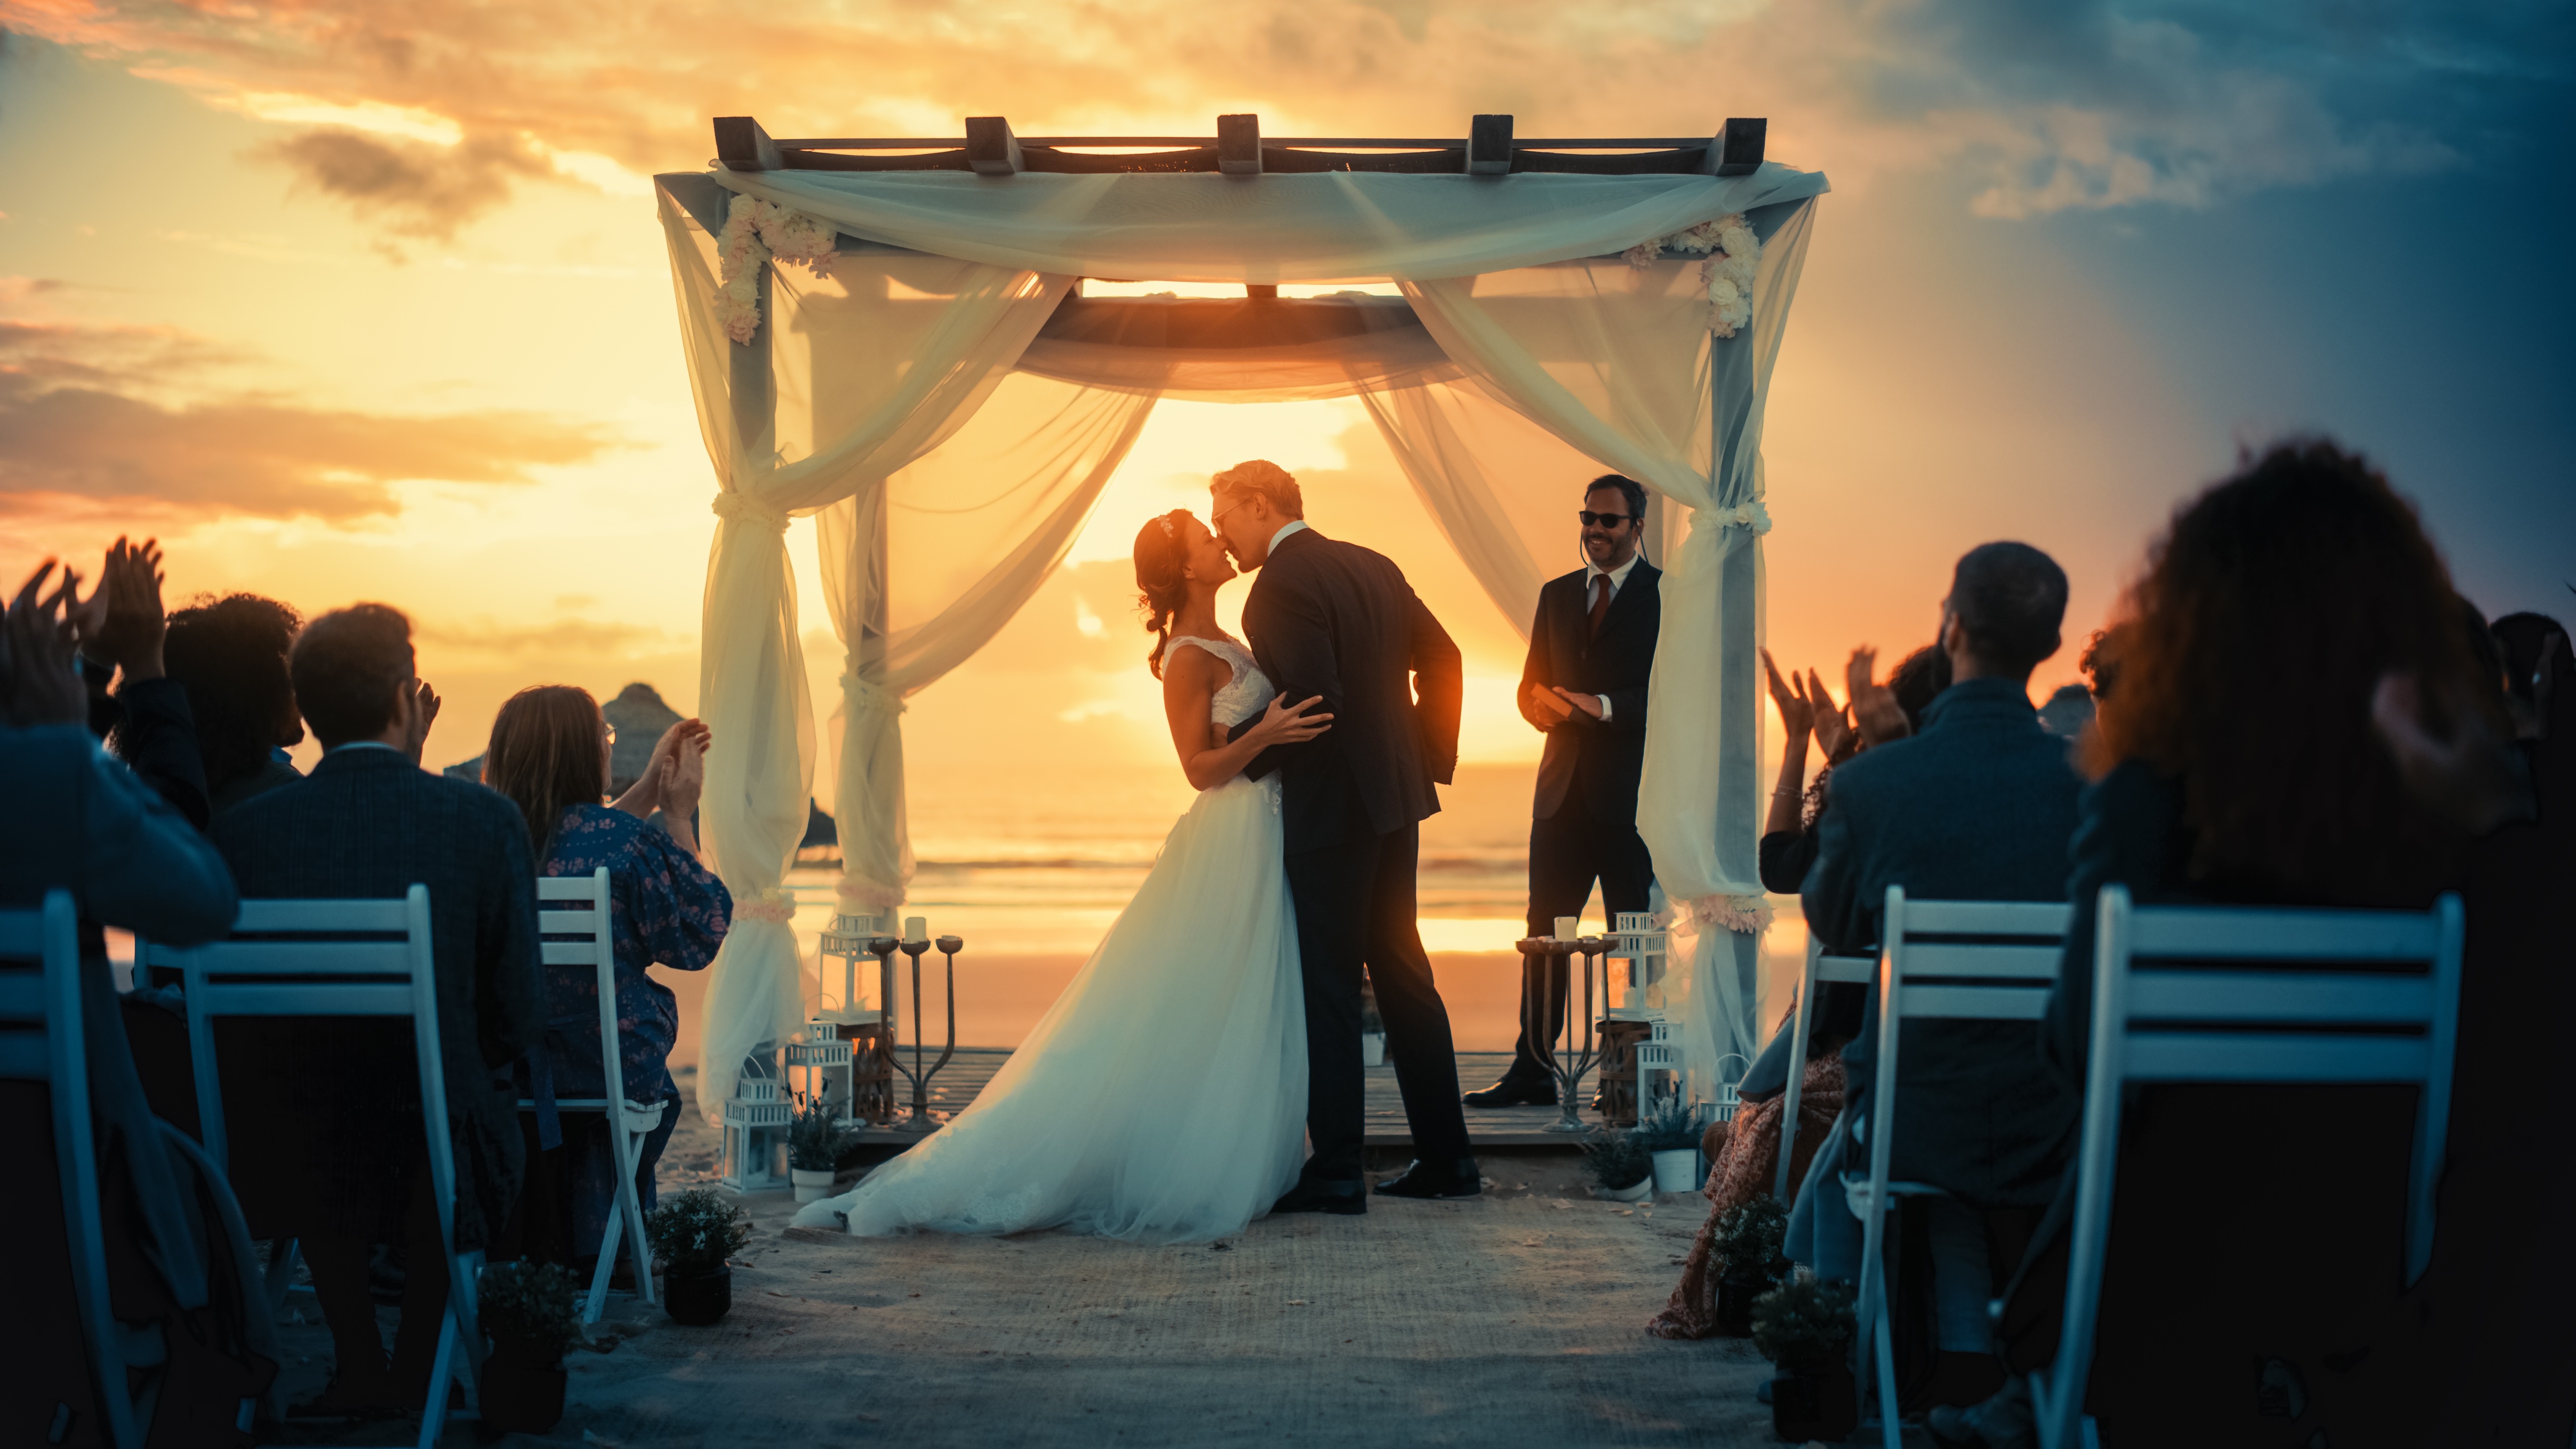 La mariée et le marié s'embrassent lors de leur mariage | Source : Shutterstock